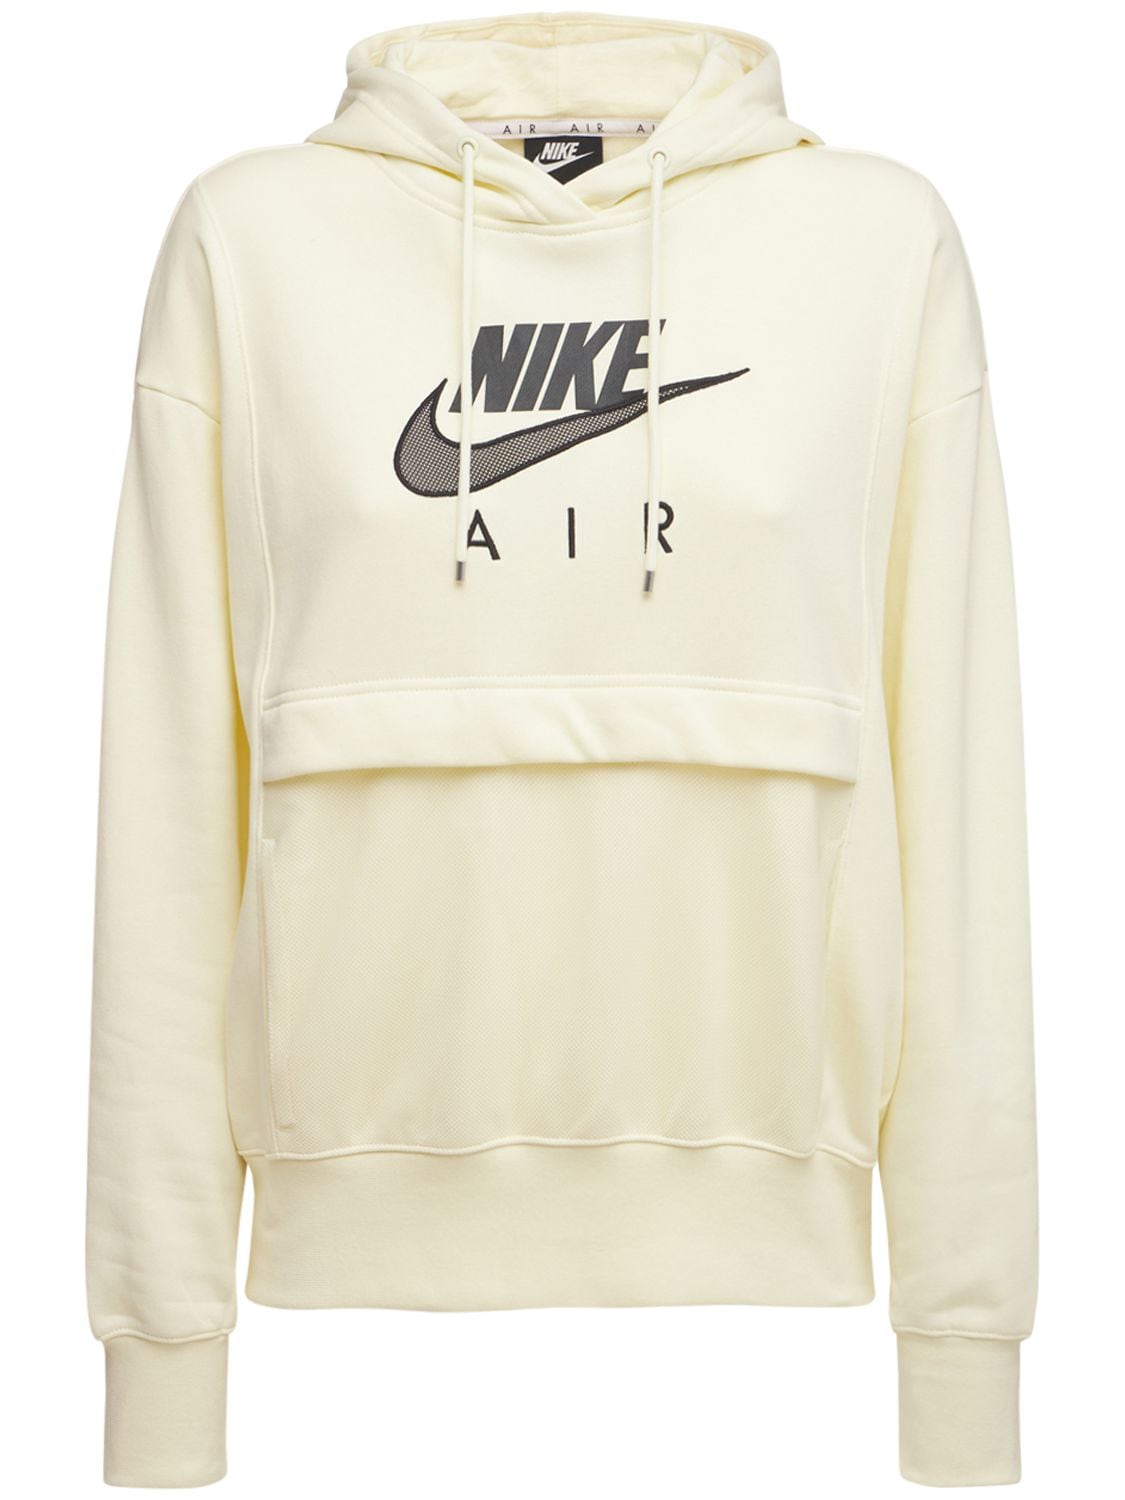 Nike "air" Sweatshirt Hoodie In White